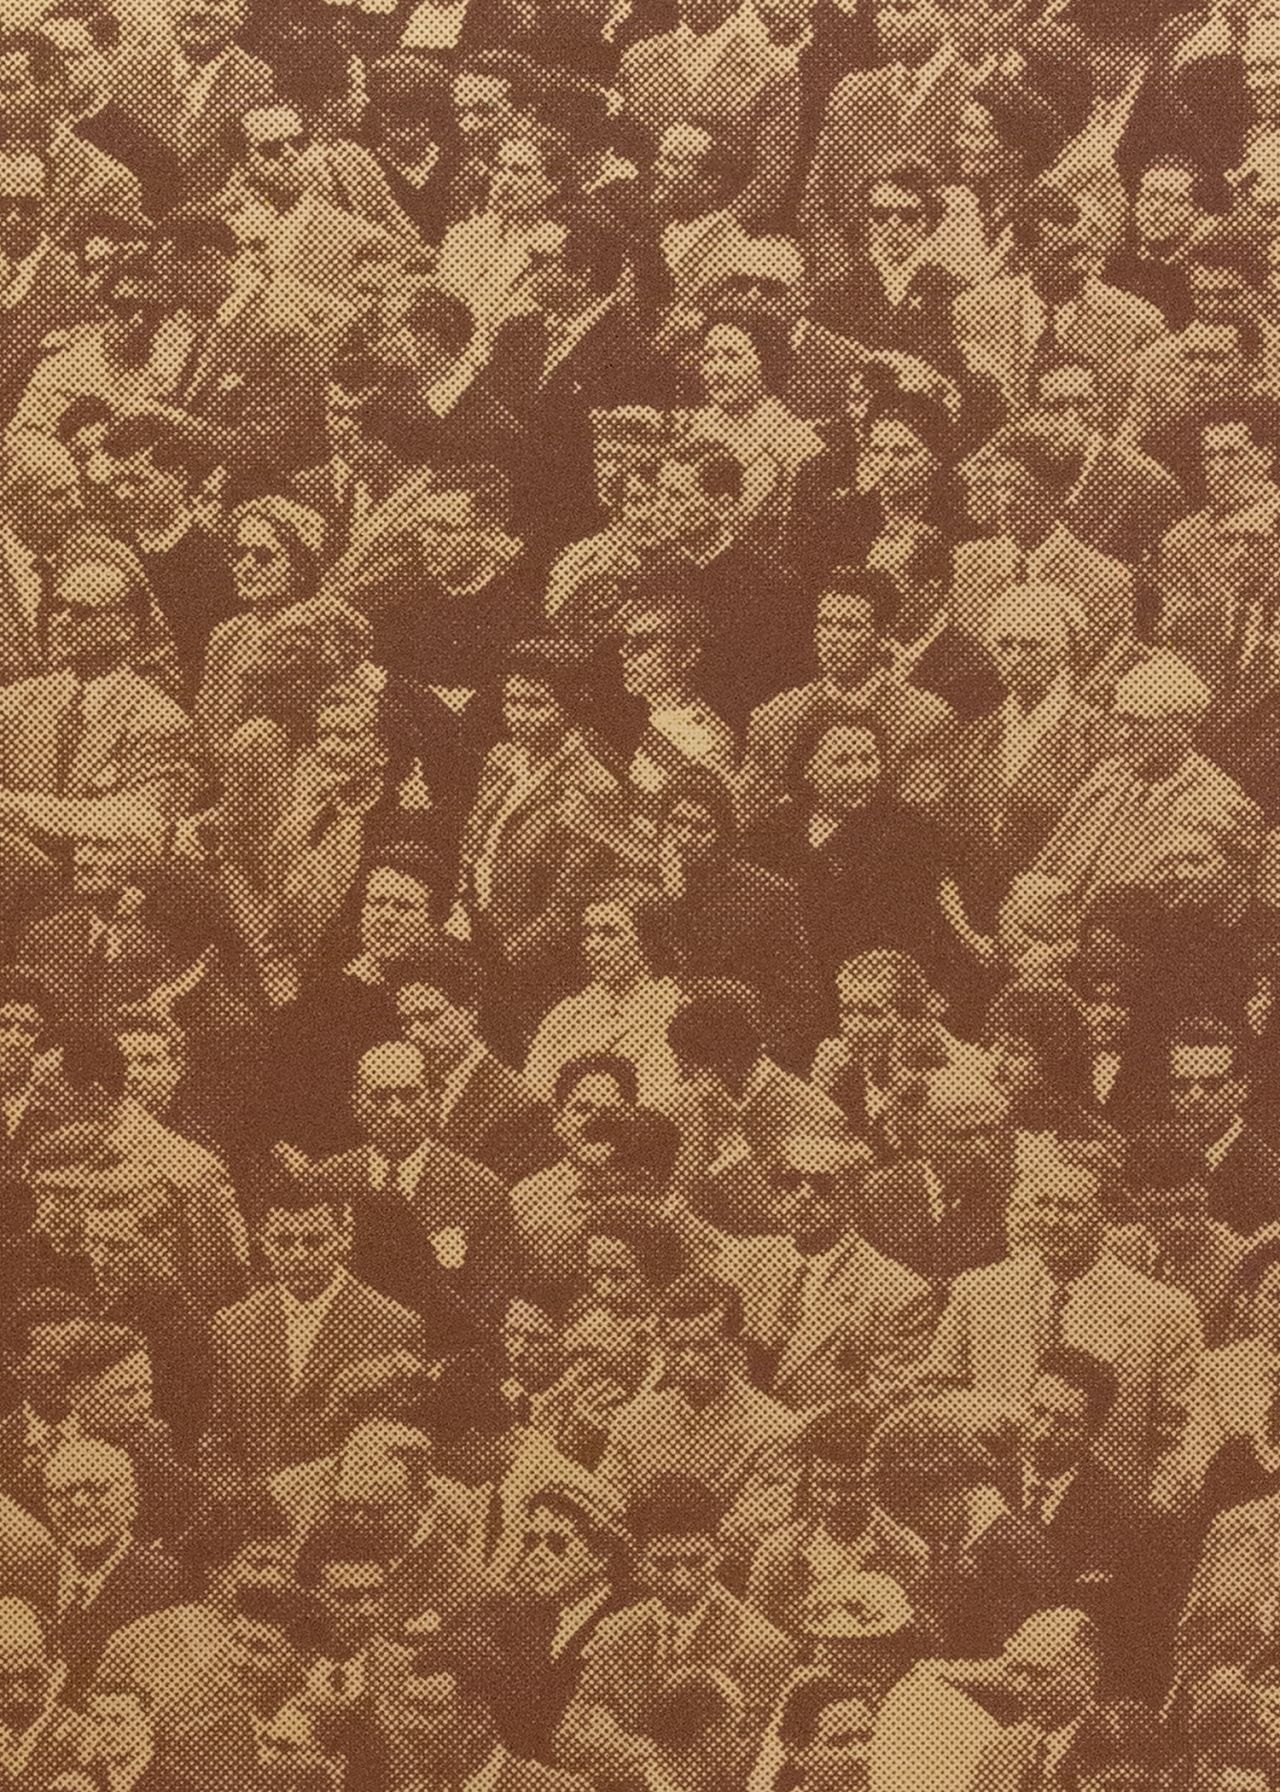 Crowd (Where’s Warhol)